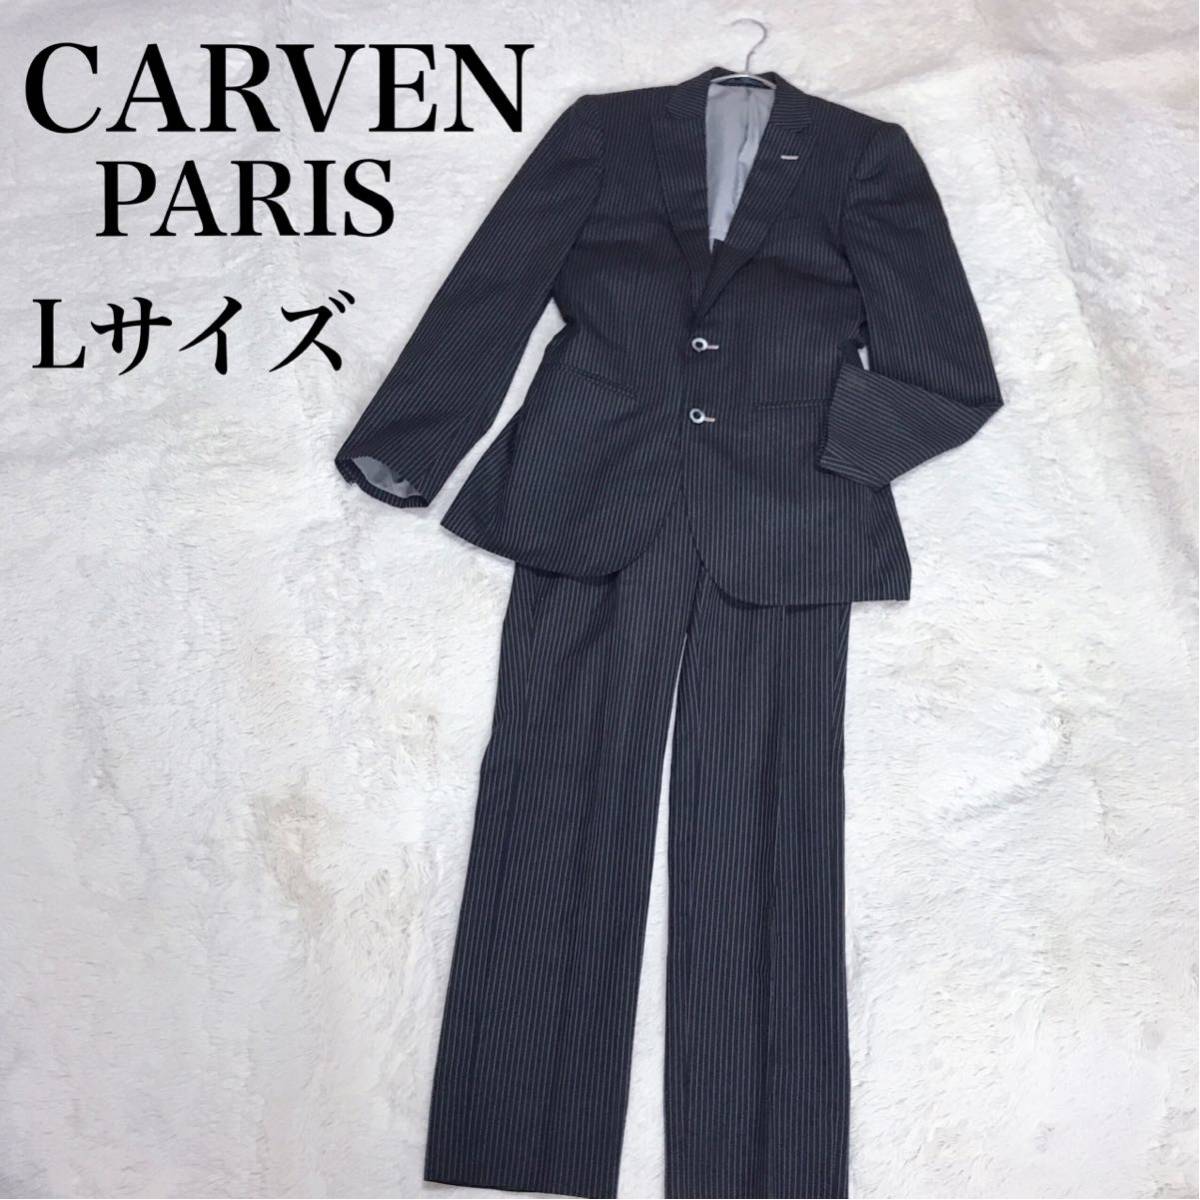 CARVEN Paris ストライプ セットアップ スーツ ジャケット パンツ